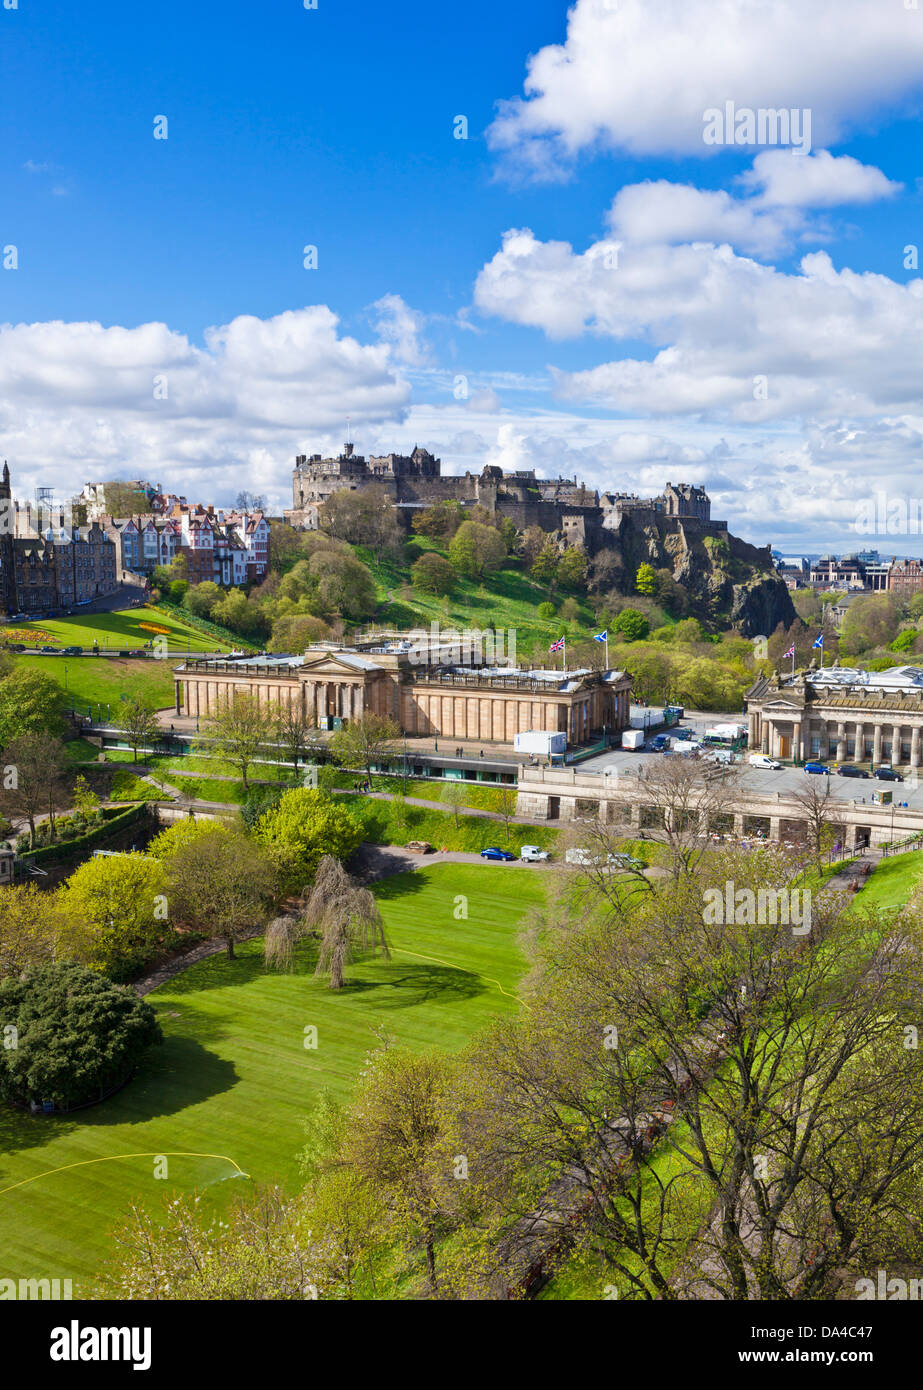 Vista sul castello di Edimburgo centro storico musei e giardini nel centro della città di Edimburgo Midlothian Scozia UK GB EU Europe Foto Stock